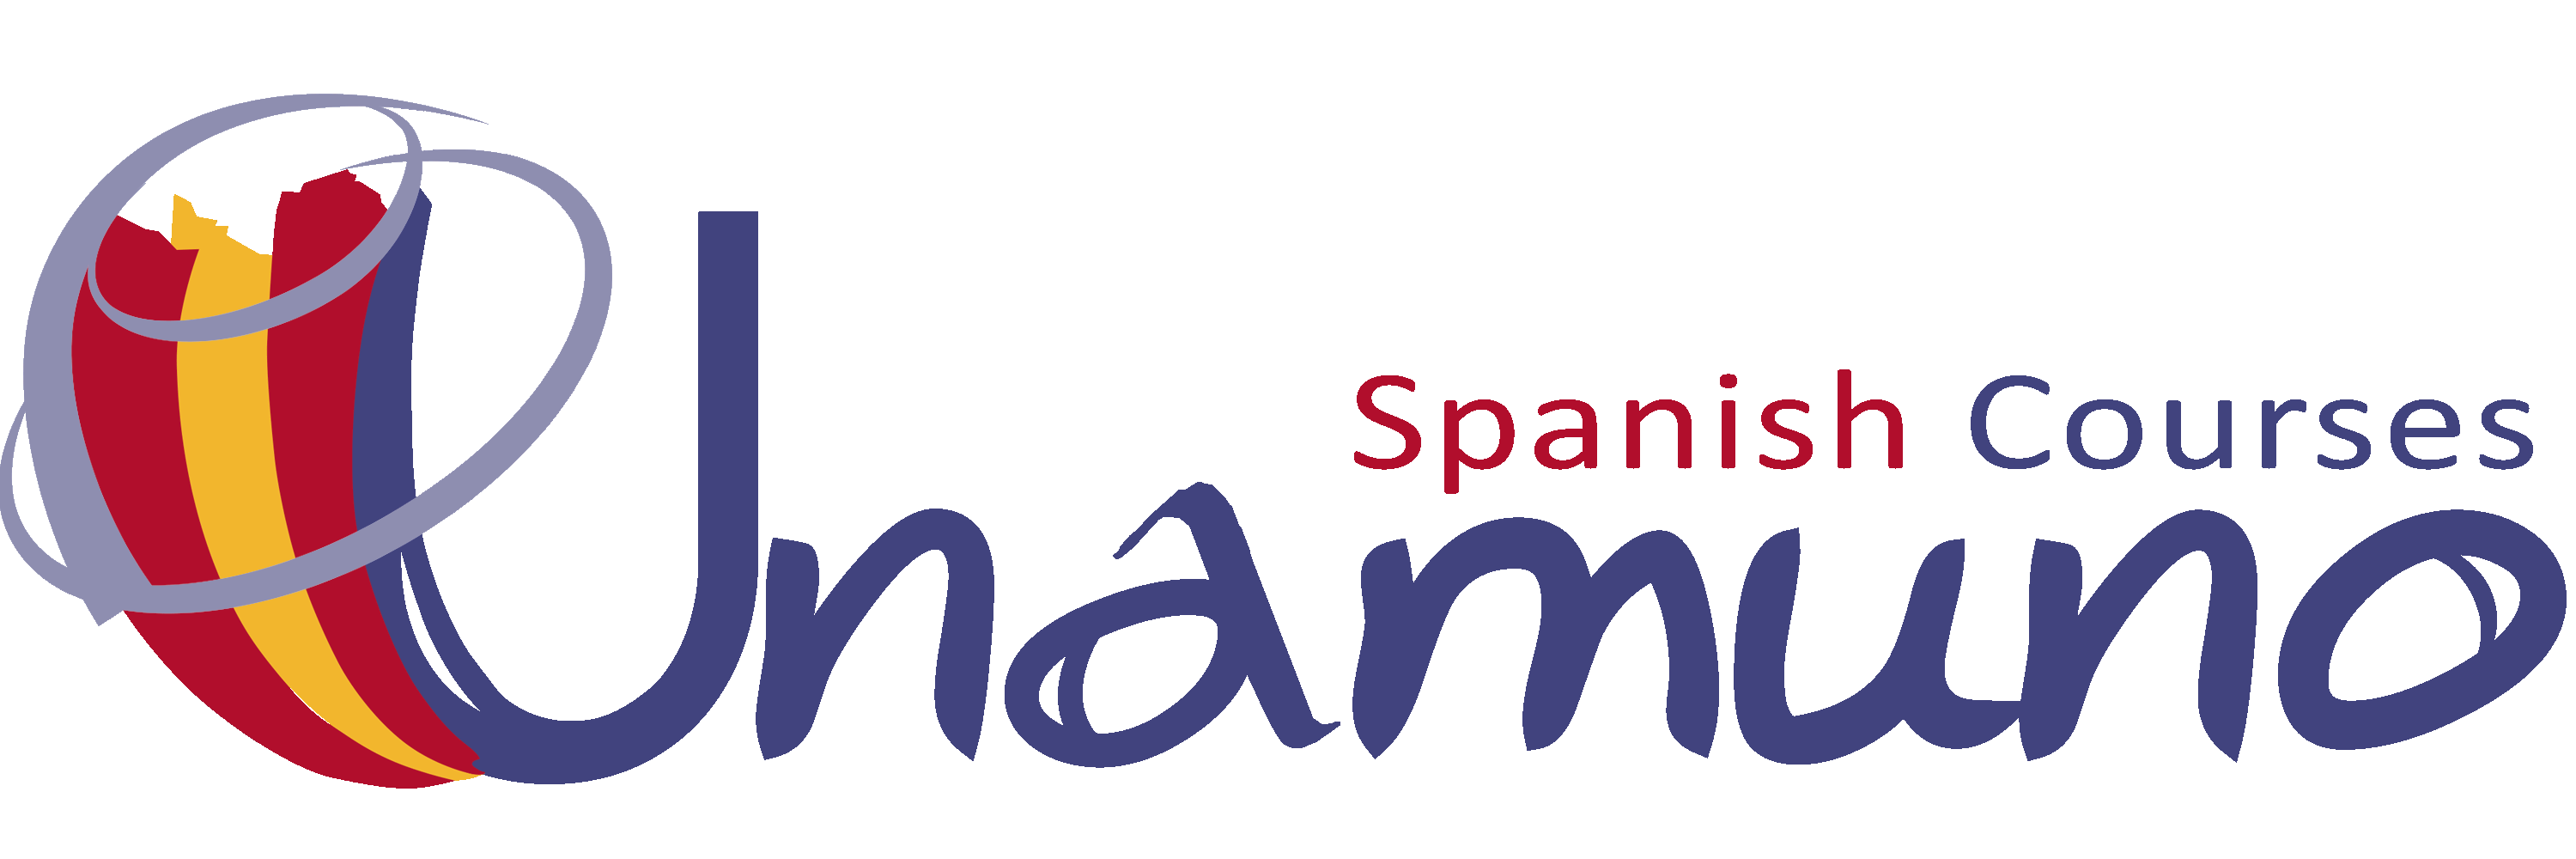 Spanish Courses Unamuno  in Cáceres